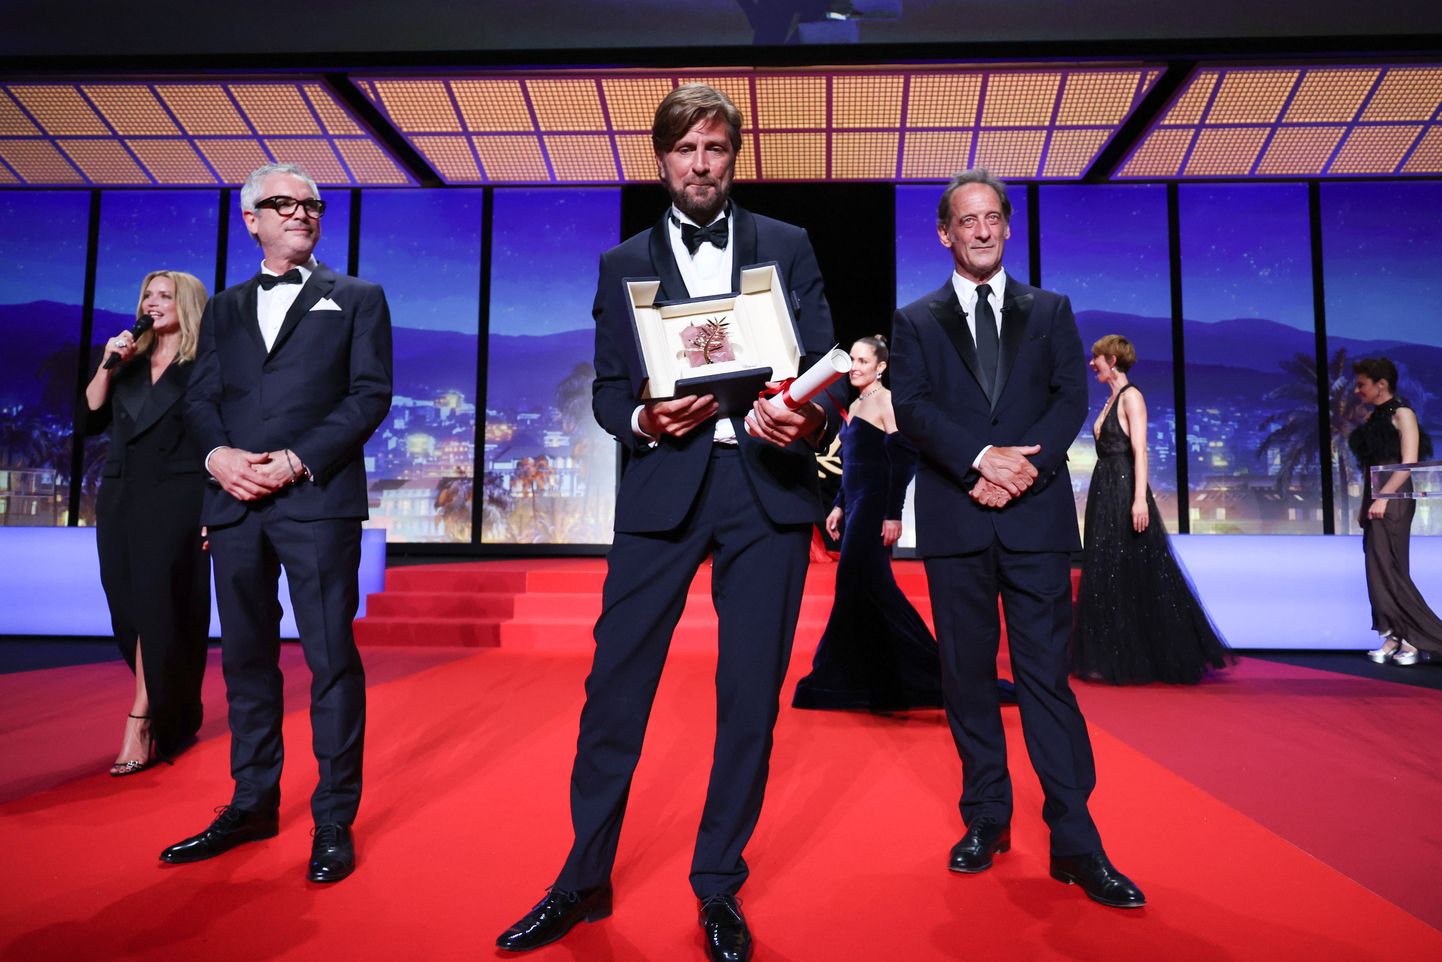 Лауреатом главной премии стал фильм «Треугольник скорби» режиссера Рубена Эстлунда.